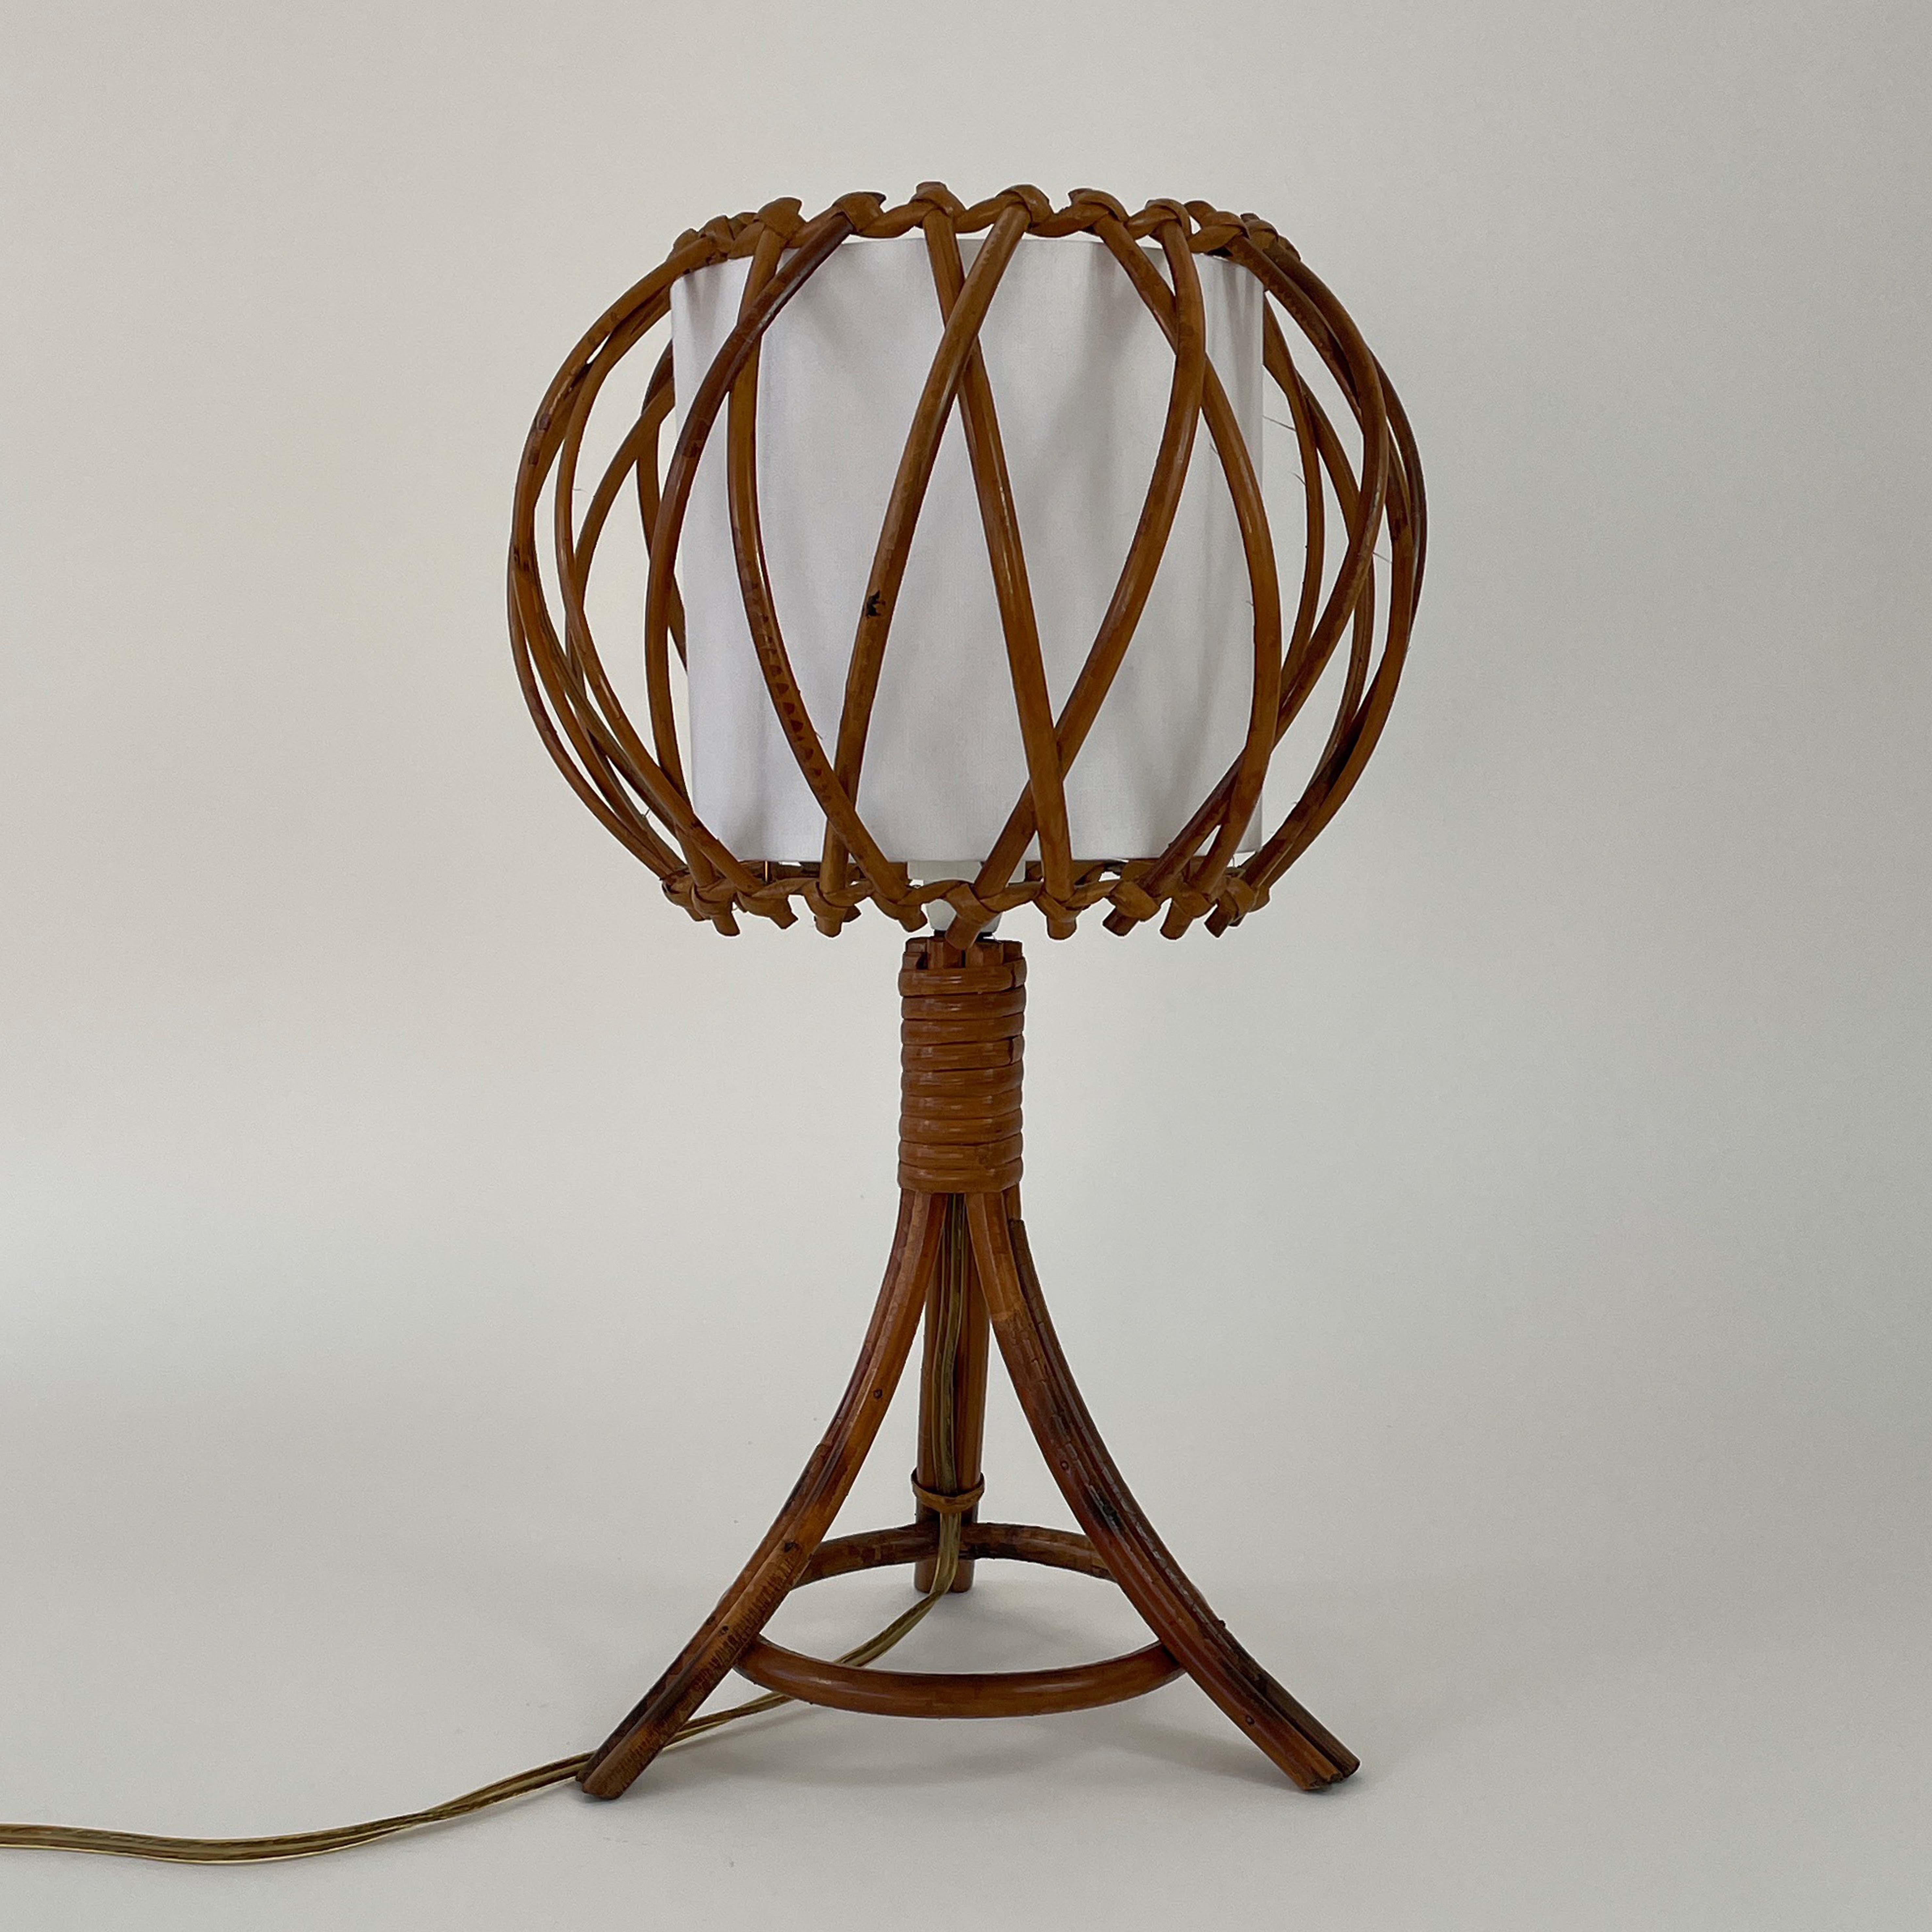 Cette magnifique lampe de table a été conçue et fabriquée par Louis Sognot en France dans les années 1950. Il se compose d'une base en bambou et en rotin et d'un diffuseur en tissu blanc cassé. L'abat-jour en tissu a été remis à neuf.

La lampe